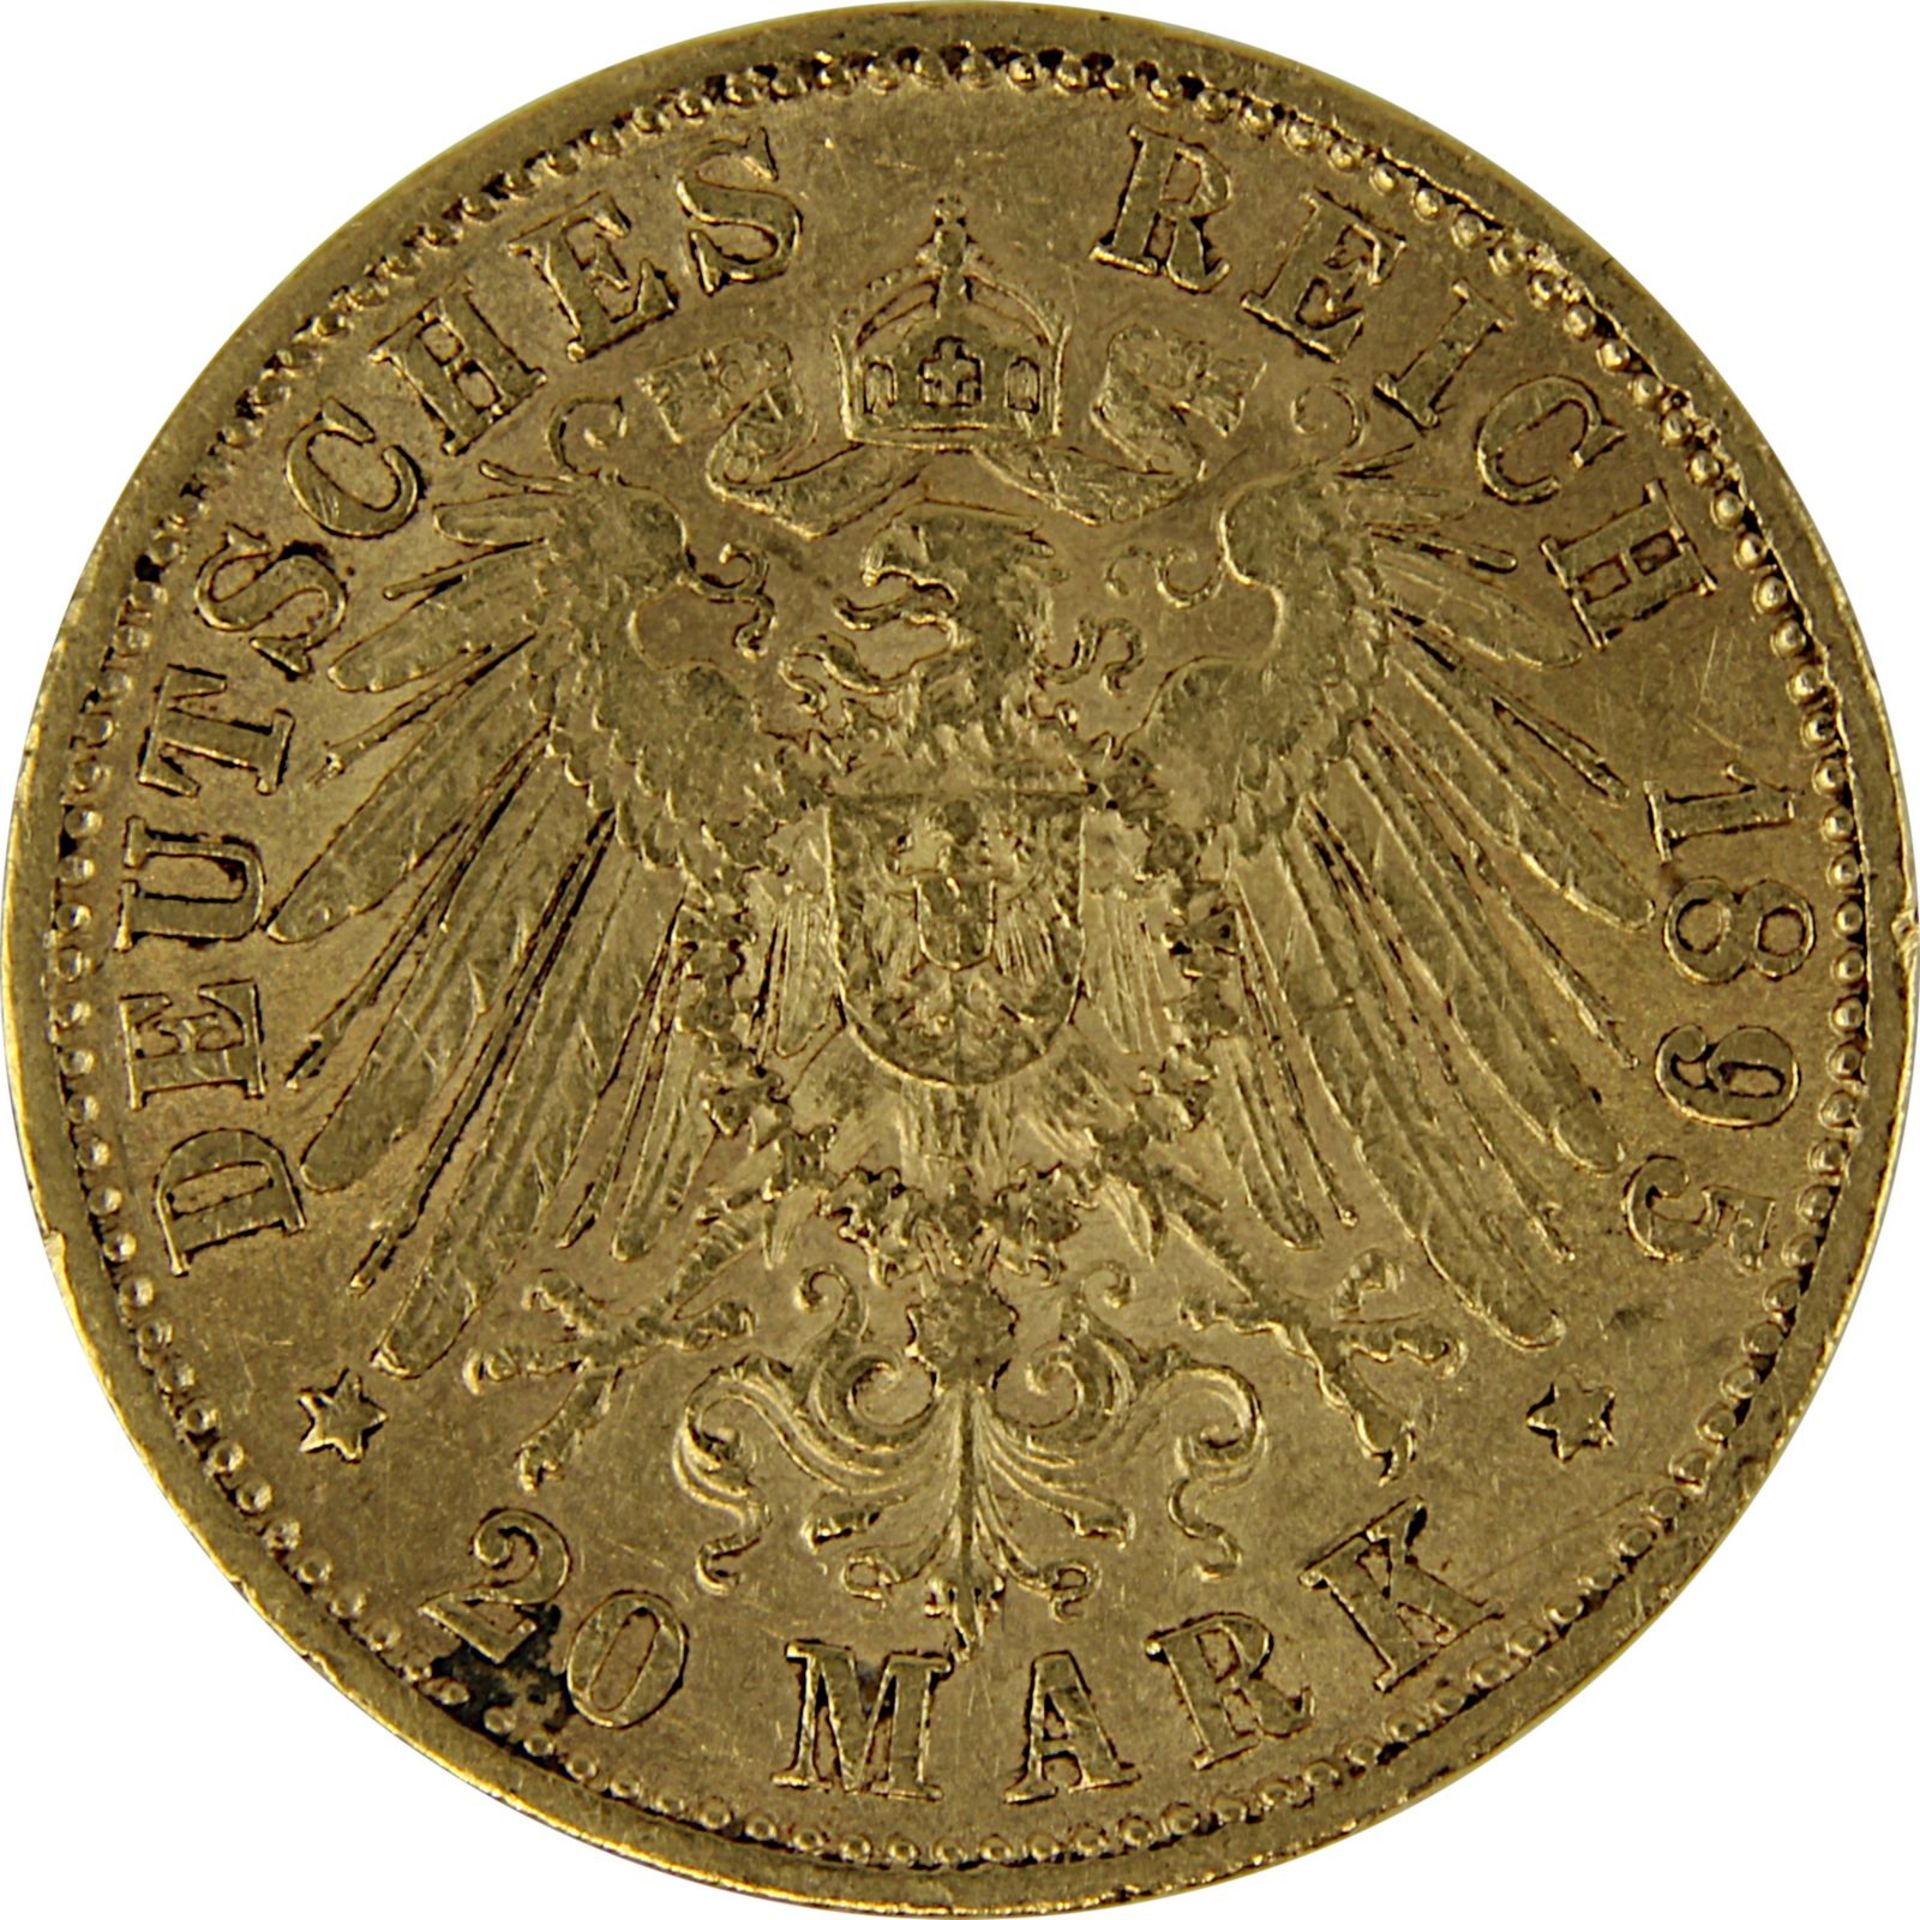 Goldmünze zu 20 Mark, Bayern - Deutsches Reich 1895, Avers: Kopf Otto König von Bayern nach links u. - Image 3 of 3